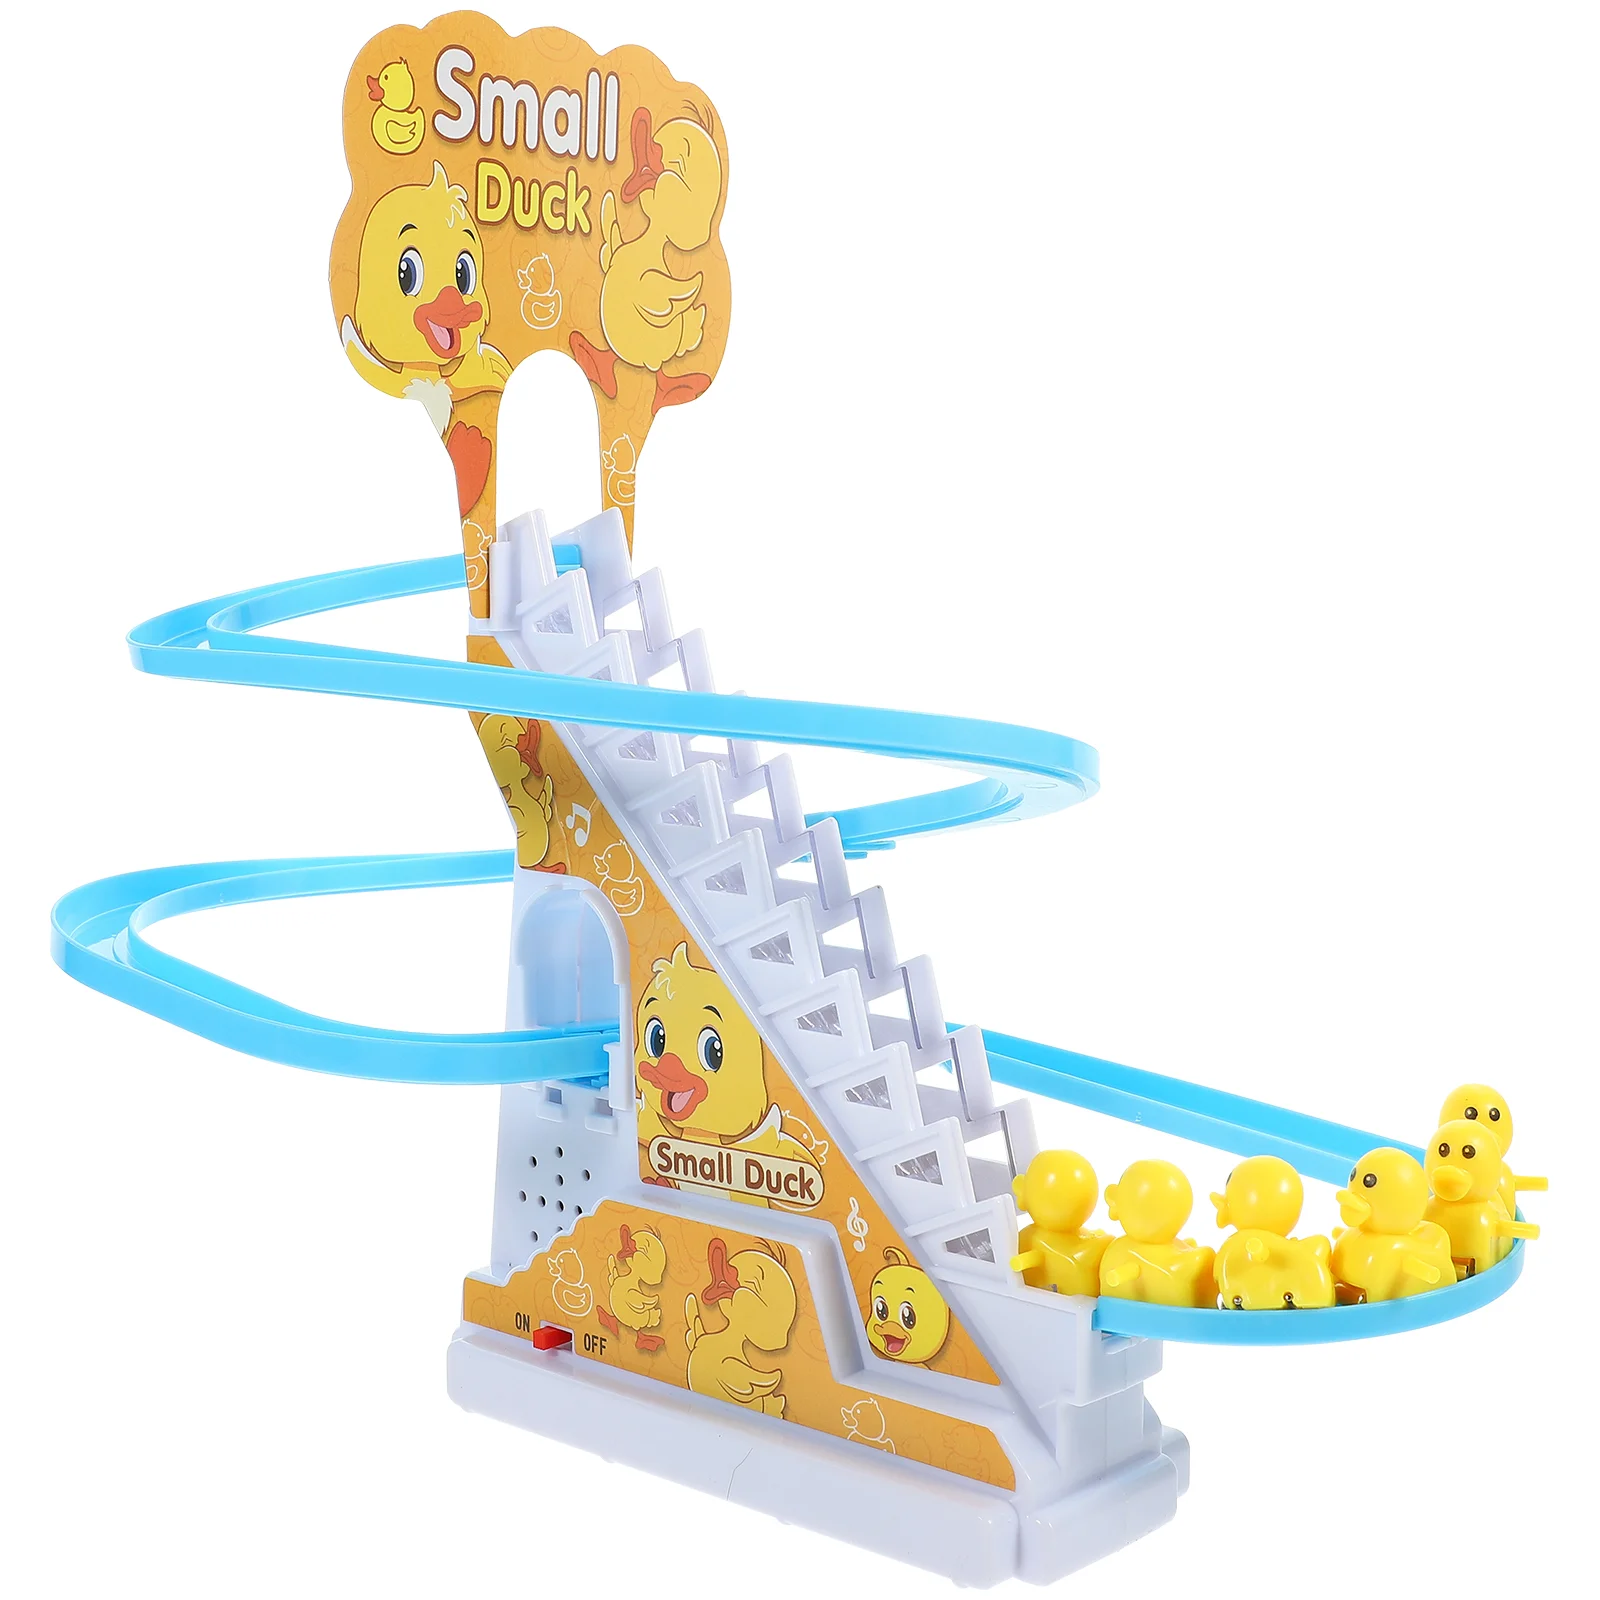 

Игрушка утка горка игрушки трек дети подъем лестница американские горки электрическая лестница подъем Забавный музыкальный утенок малыш